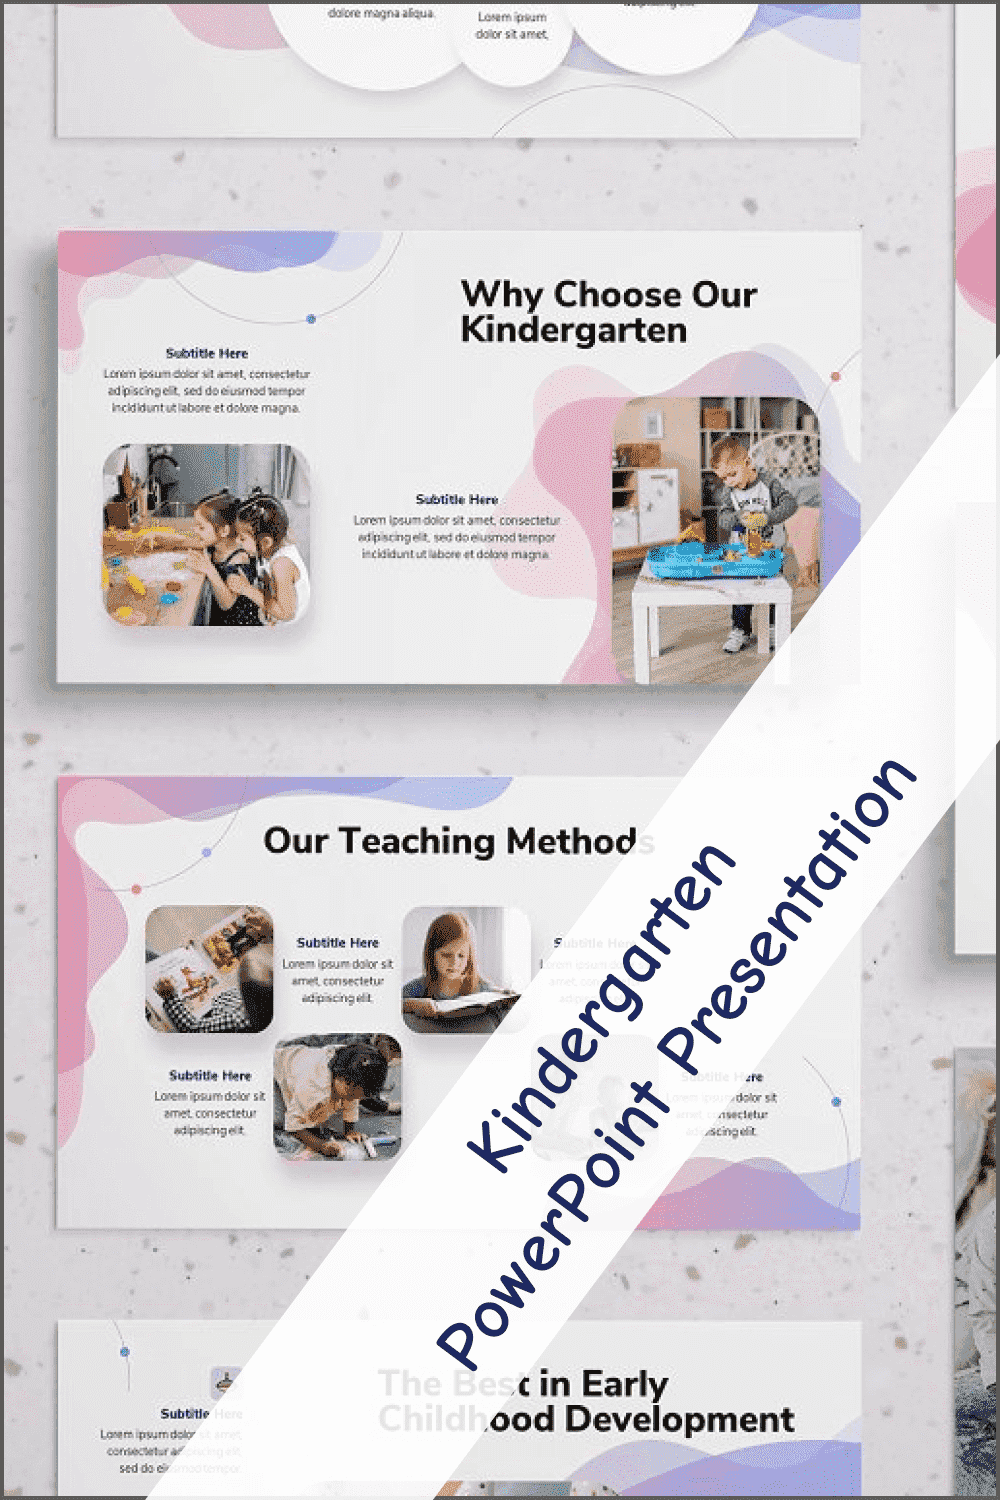 Kindergarten PowerPoint Presentation - "Why Choose Our Kindergarten".